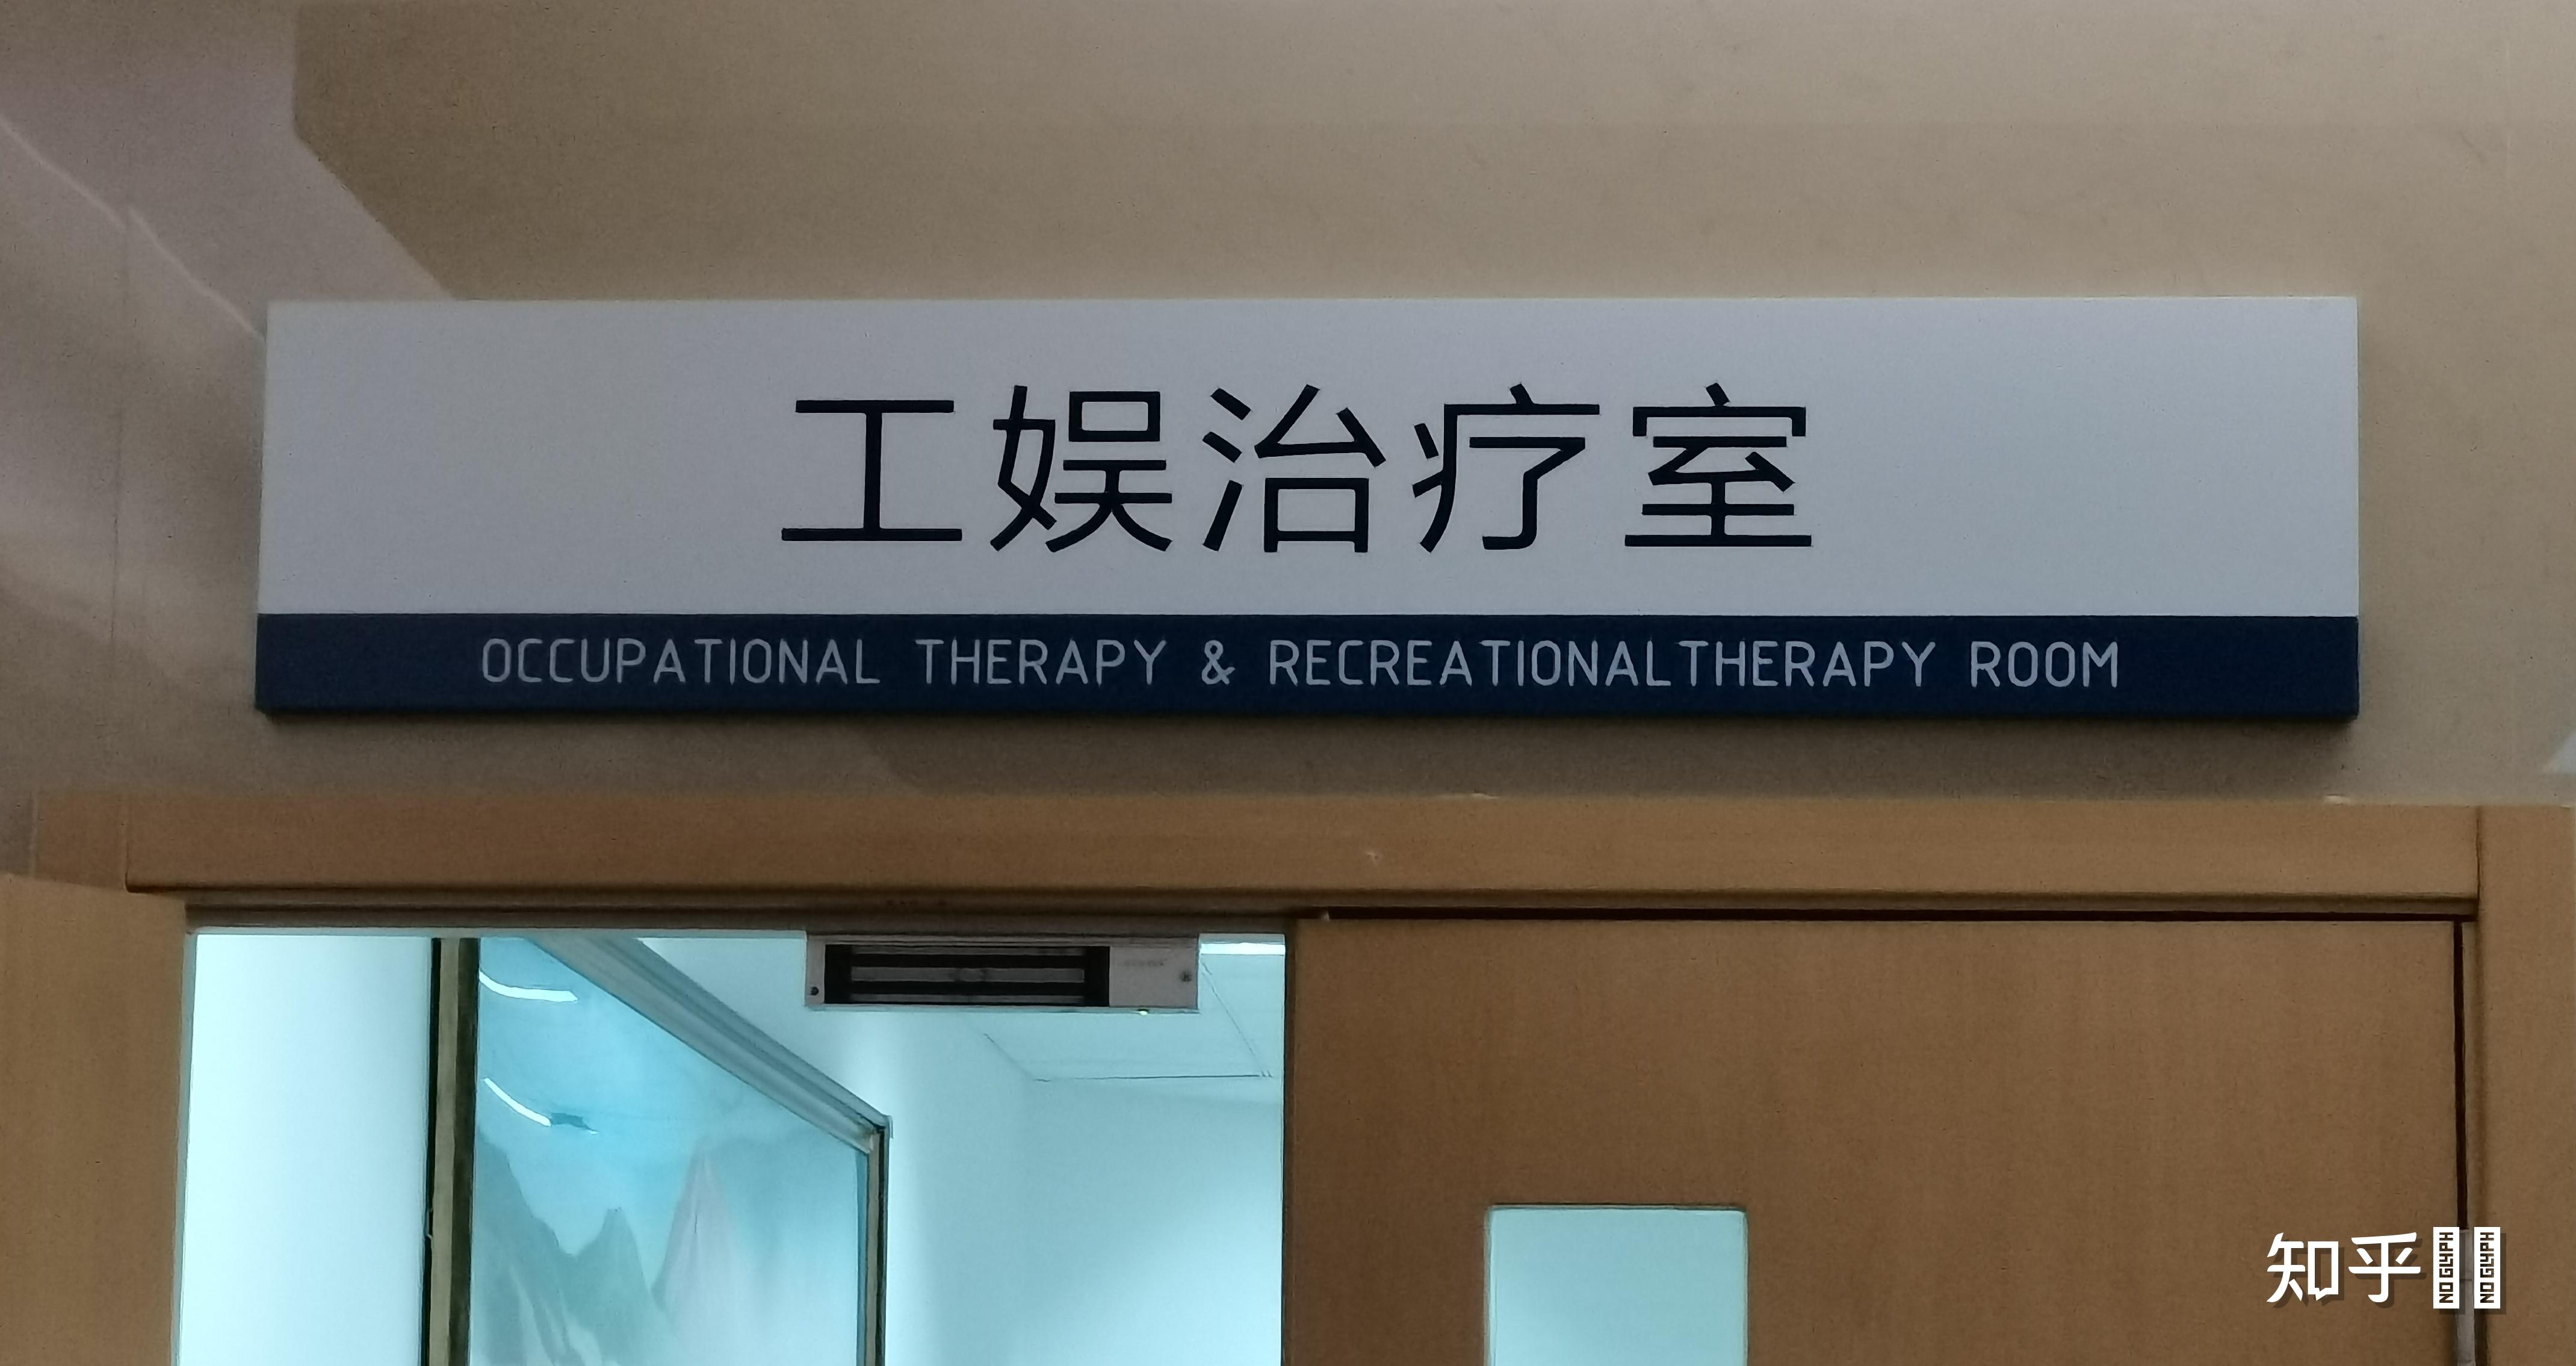 北京大学第六医院全天在门口随时联系北京大学第六医院咨询电话和门诊电话号码各是多少